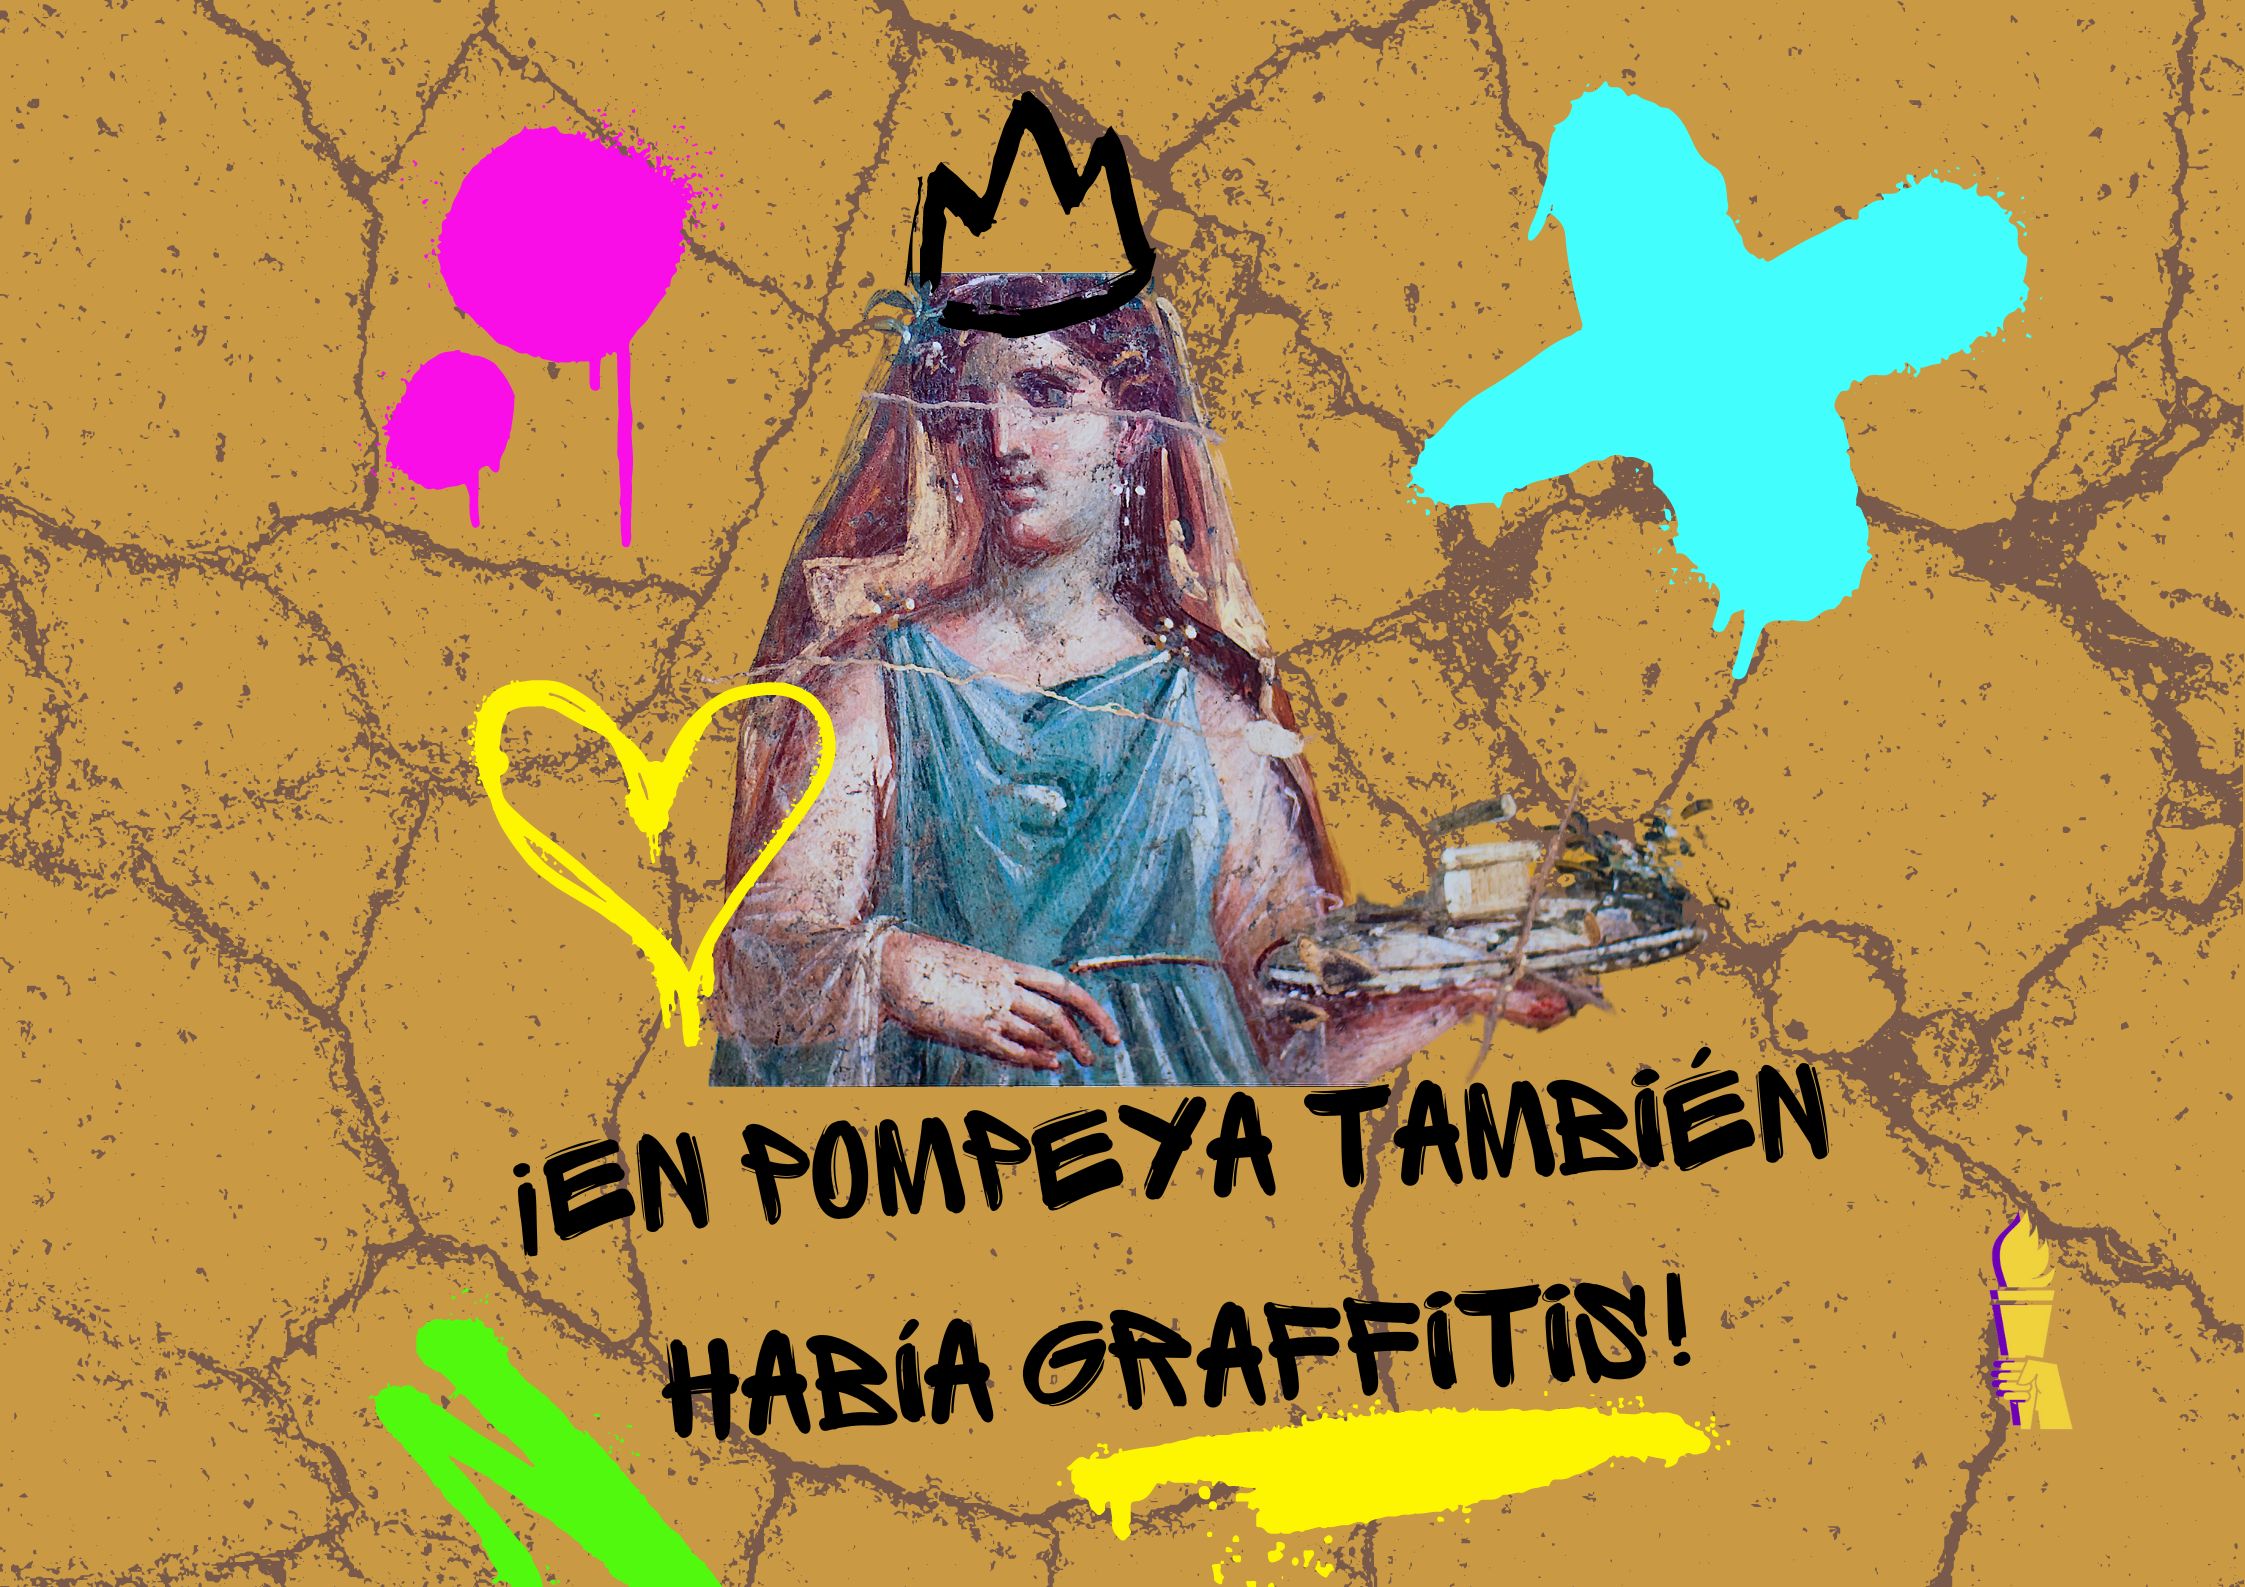 En Pompeya haban graffitis